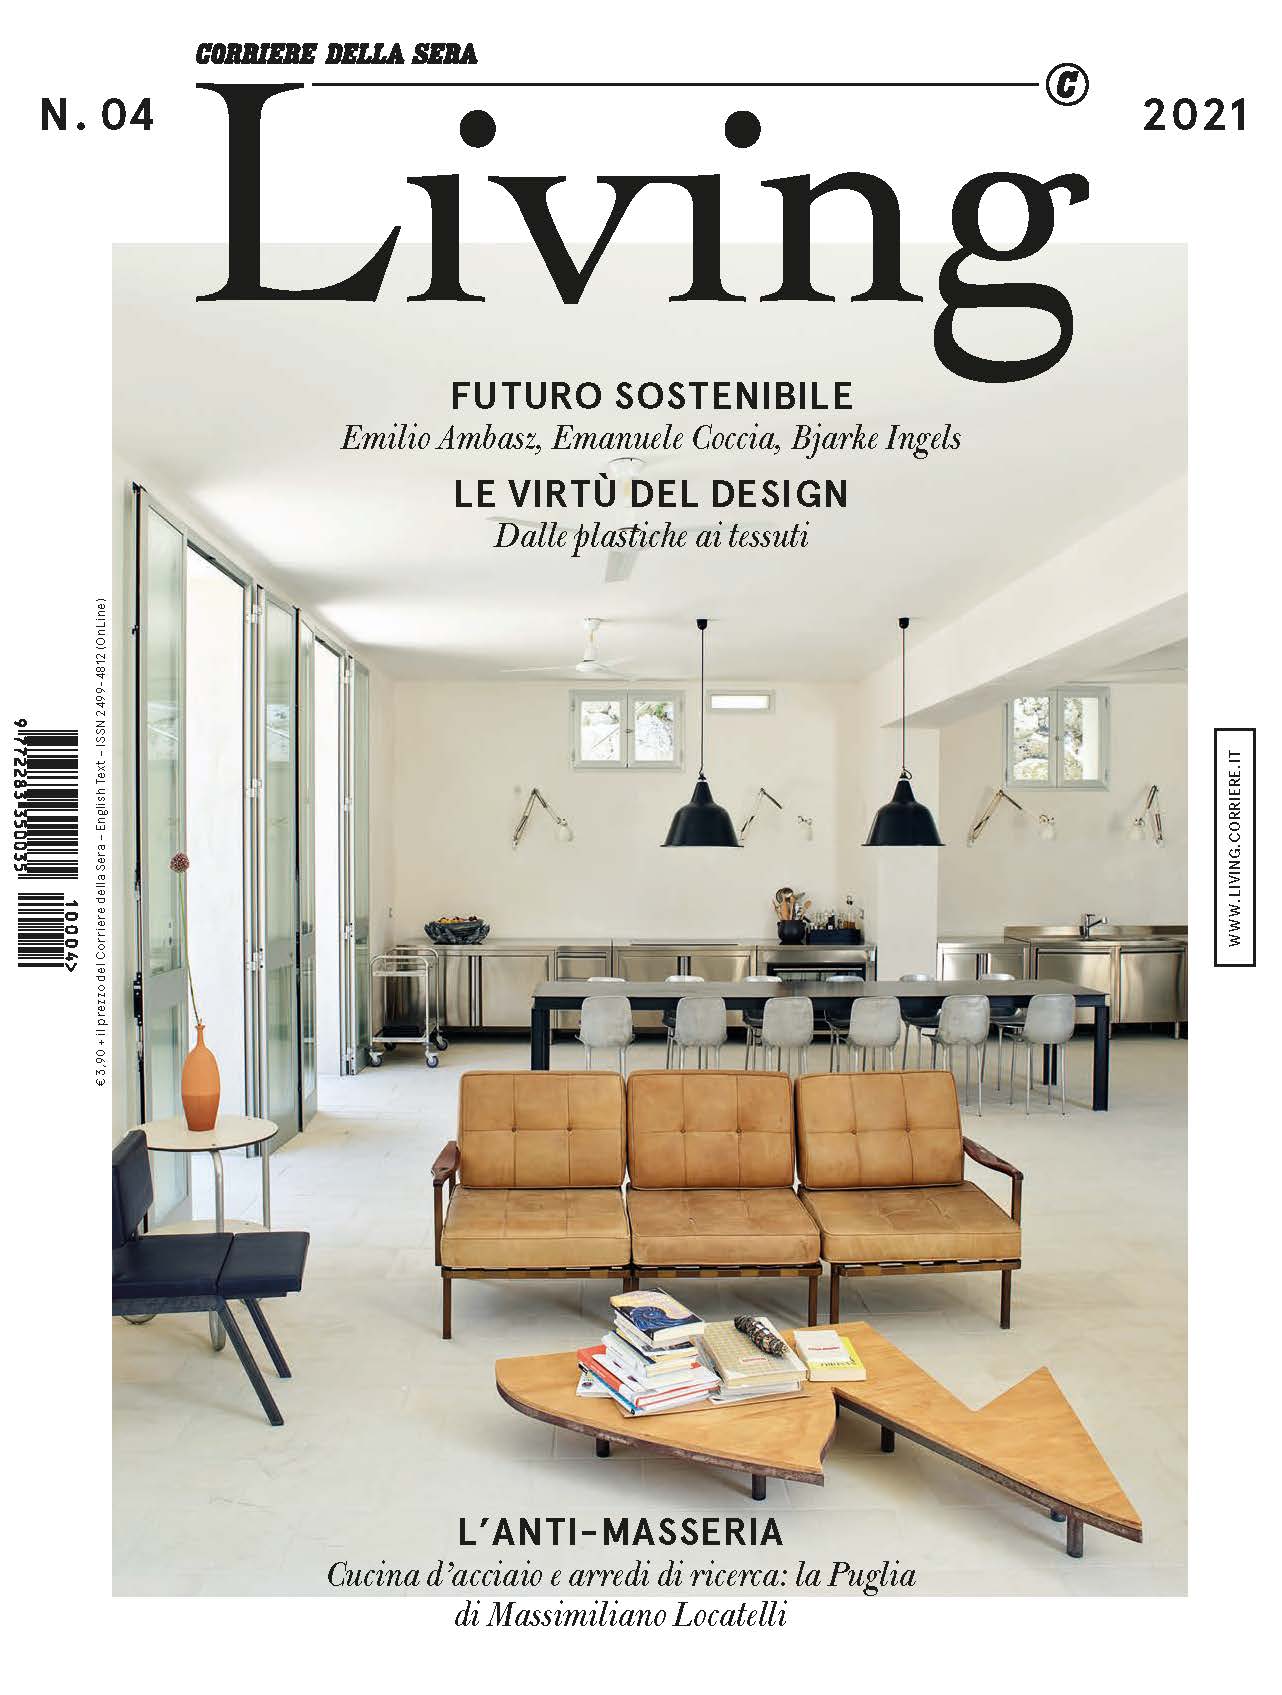 Фото на обложке - Кресло BertO's Patti в журнале Living - Corriere della Sera